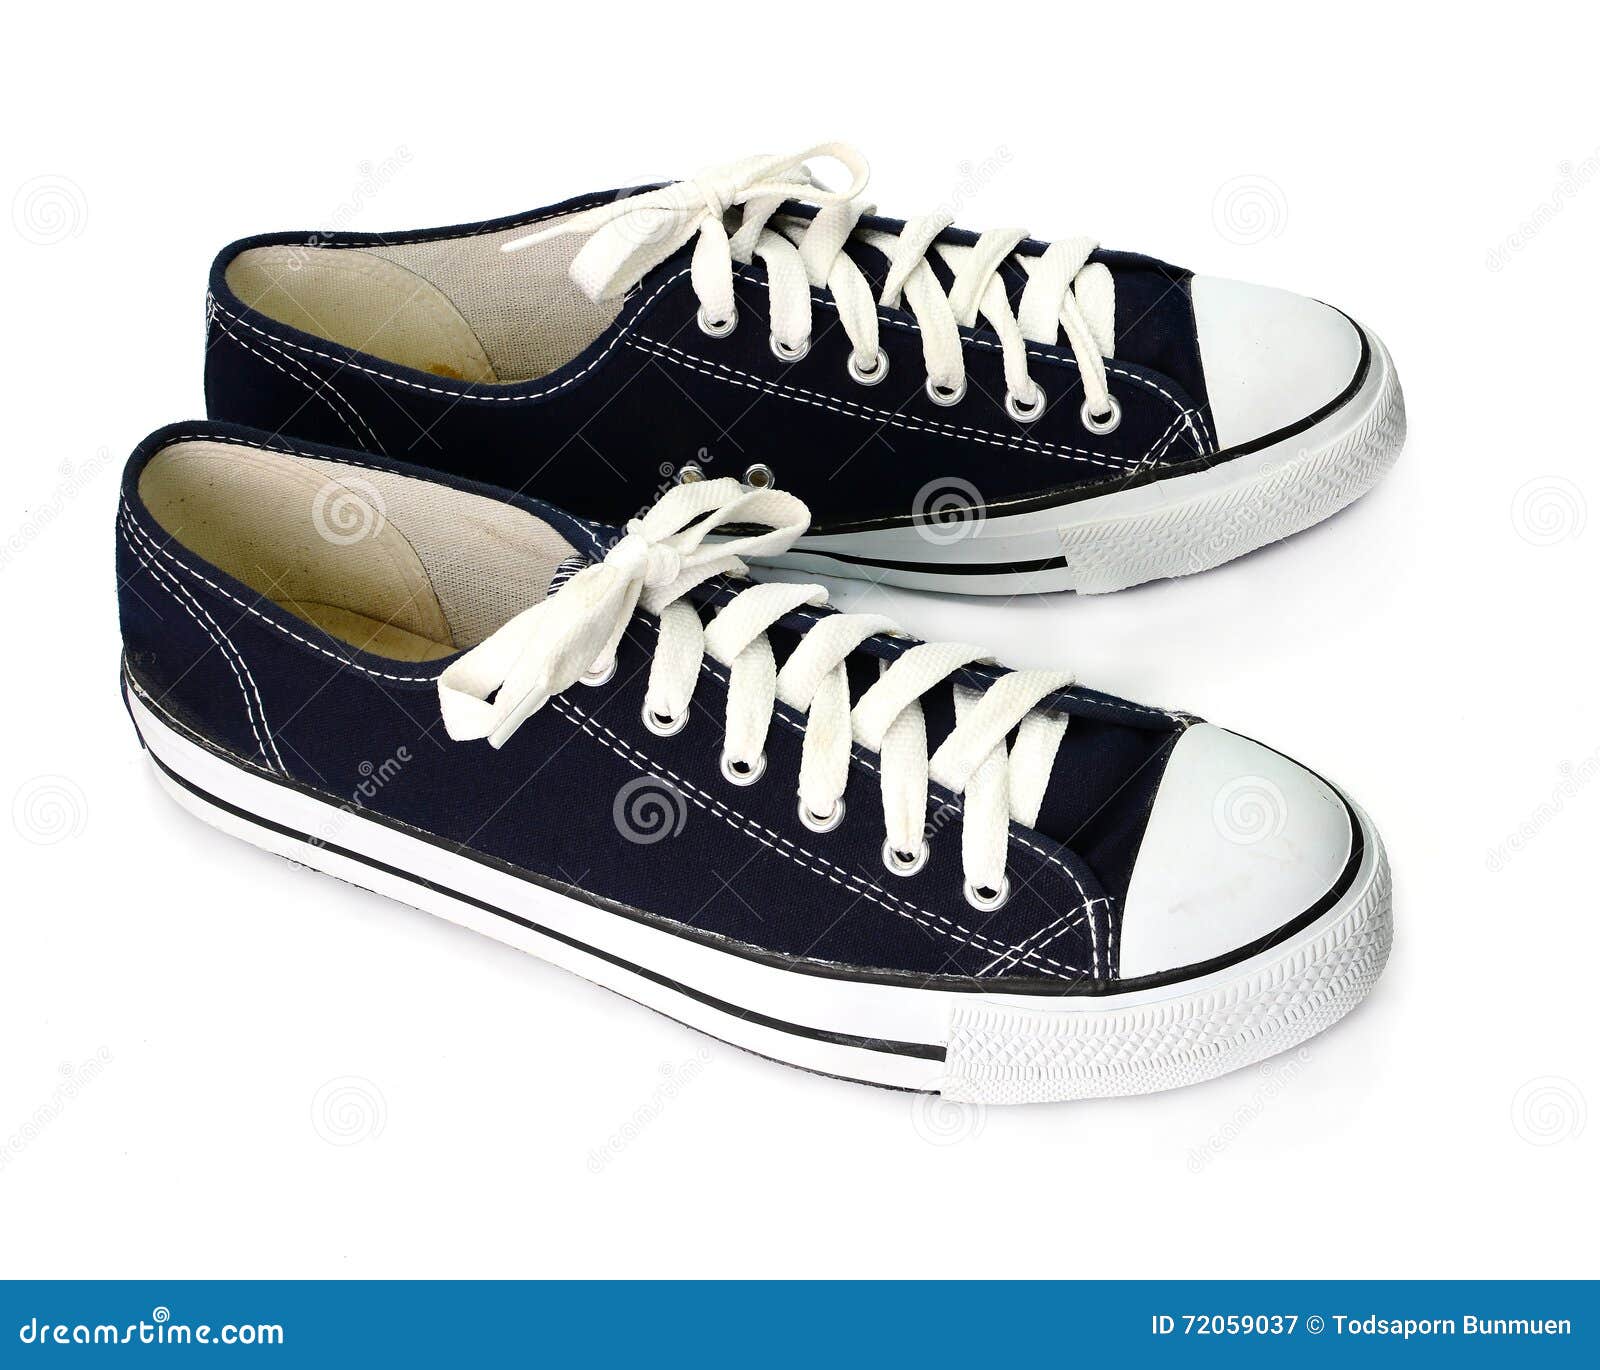 Dark Blue Shoes Isolated on White Background Stock Image - Image of ...